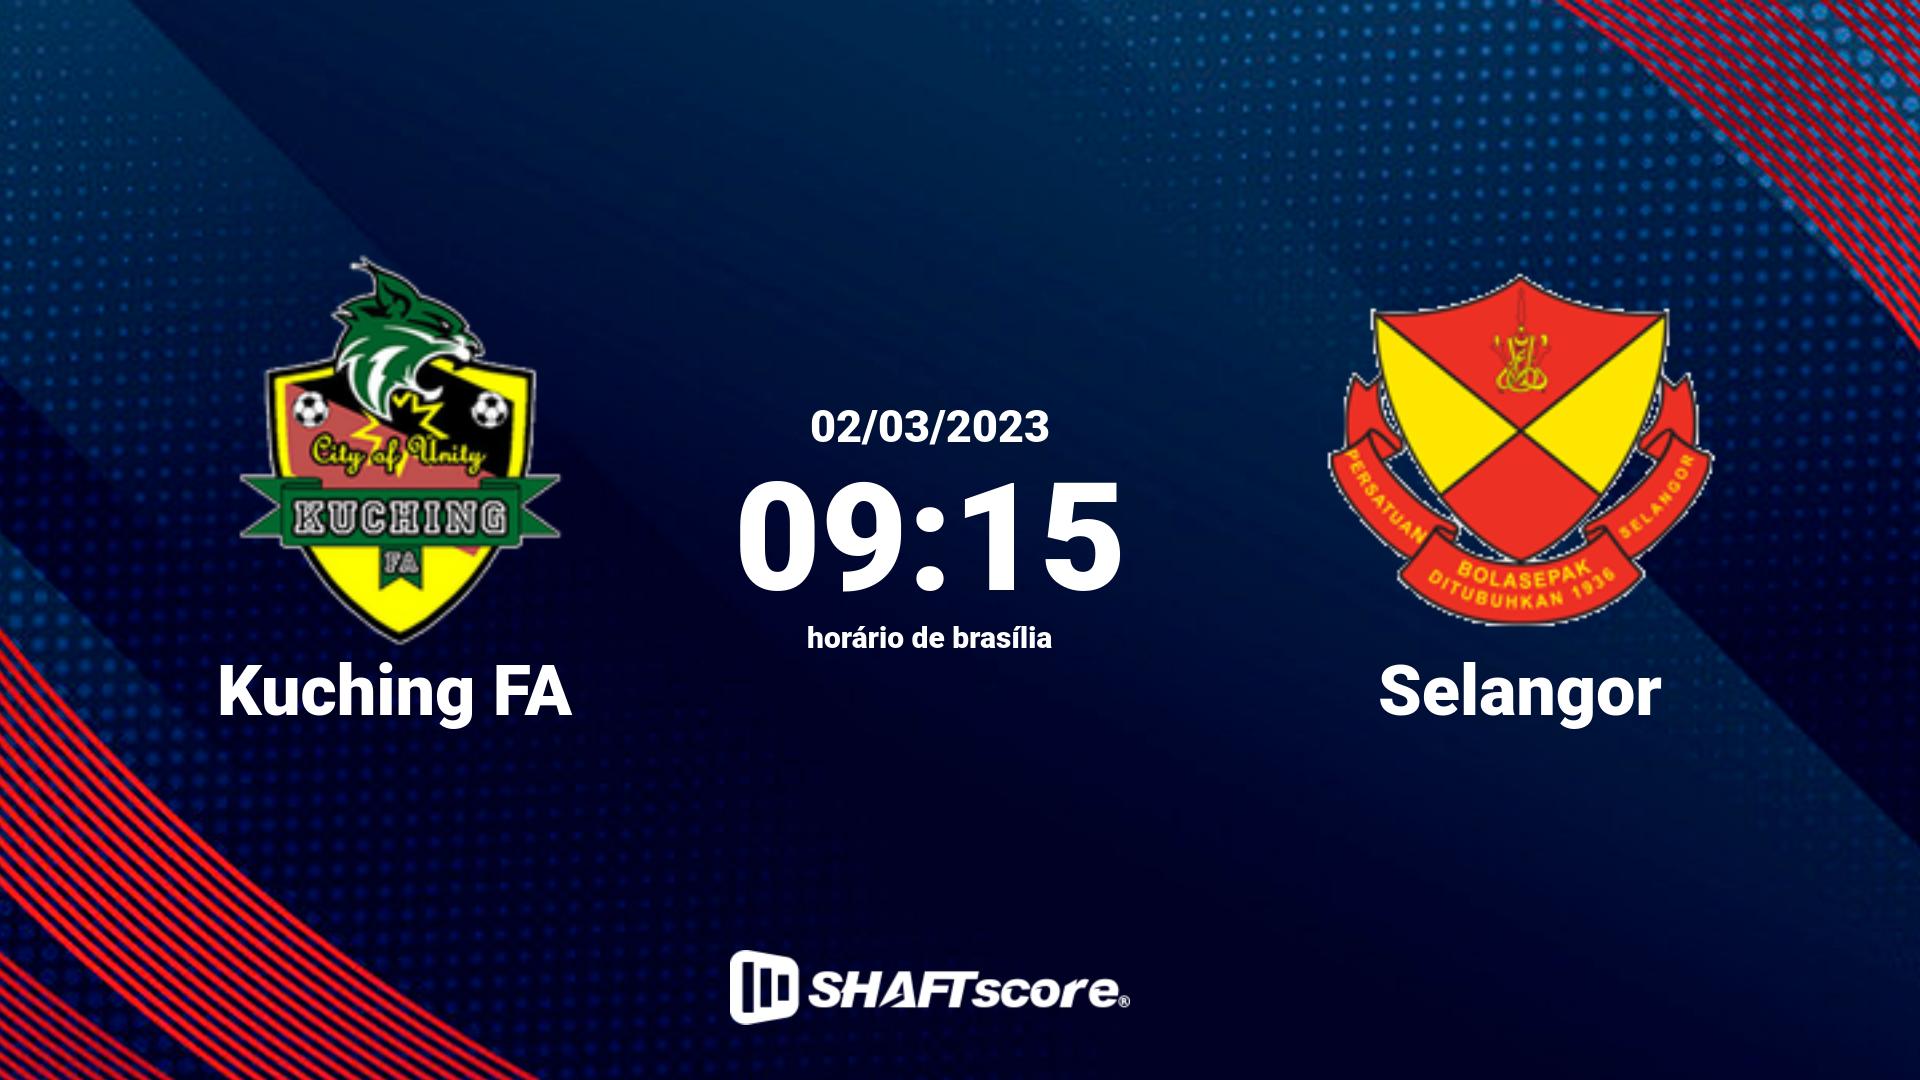 Estatísticas do jogo Kuching FA vs Selangor 02.03 09:15